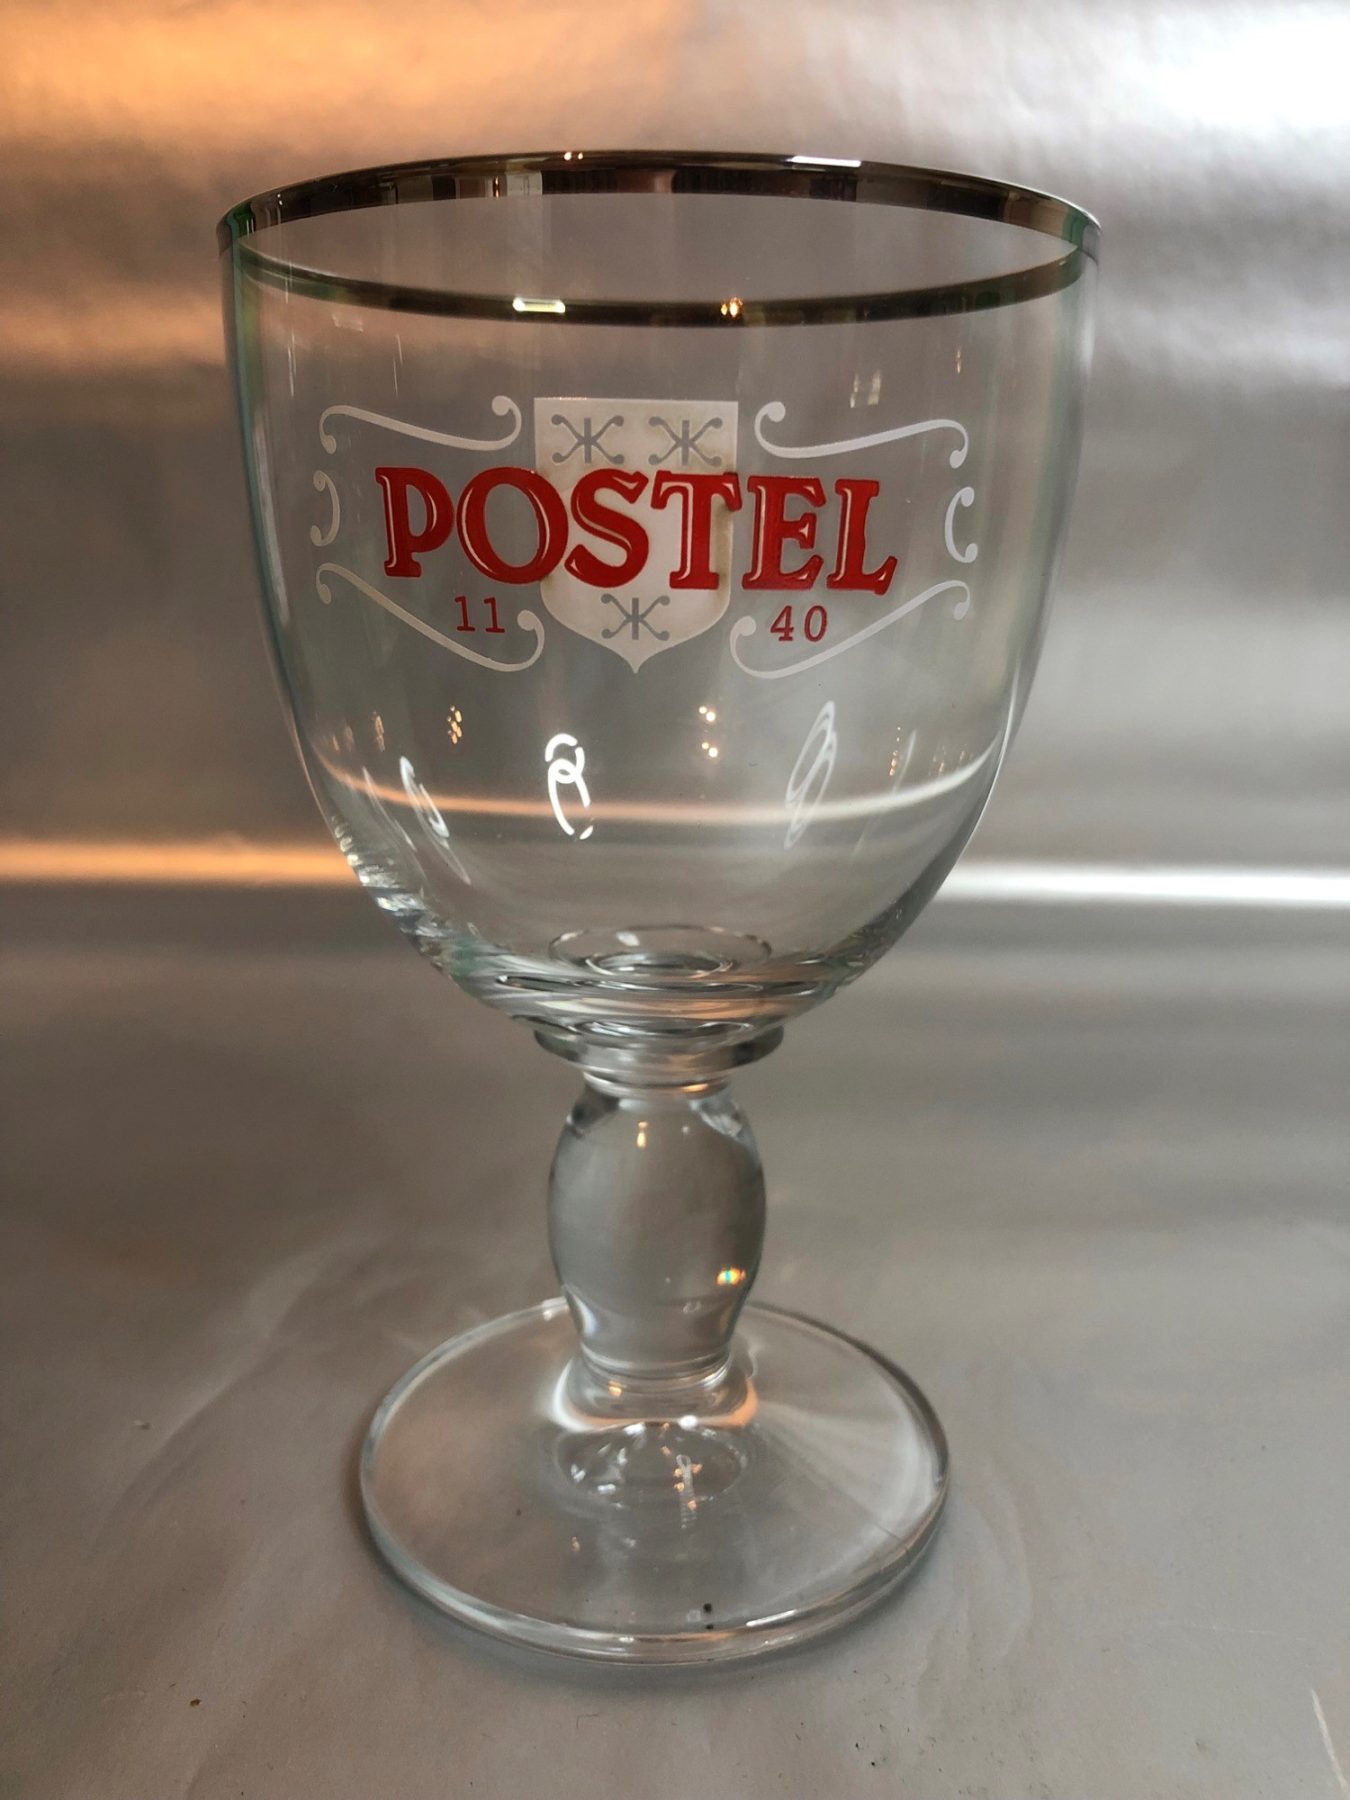 Postel beer glass